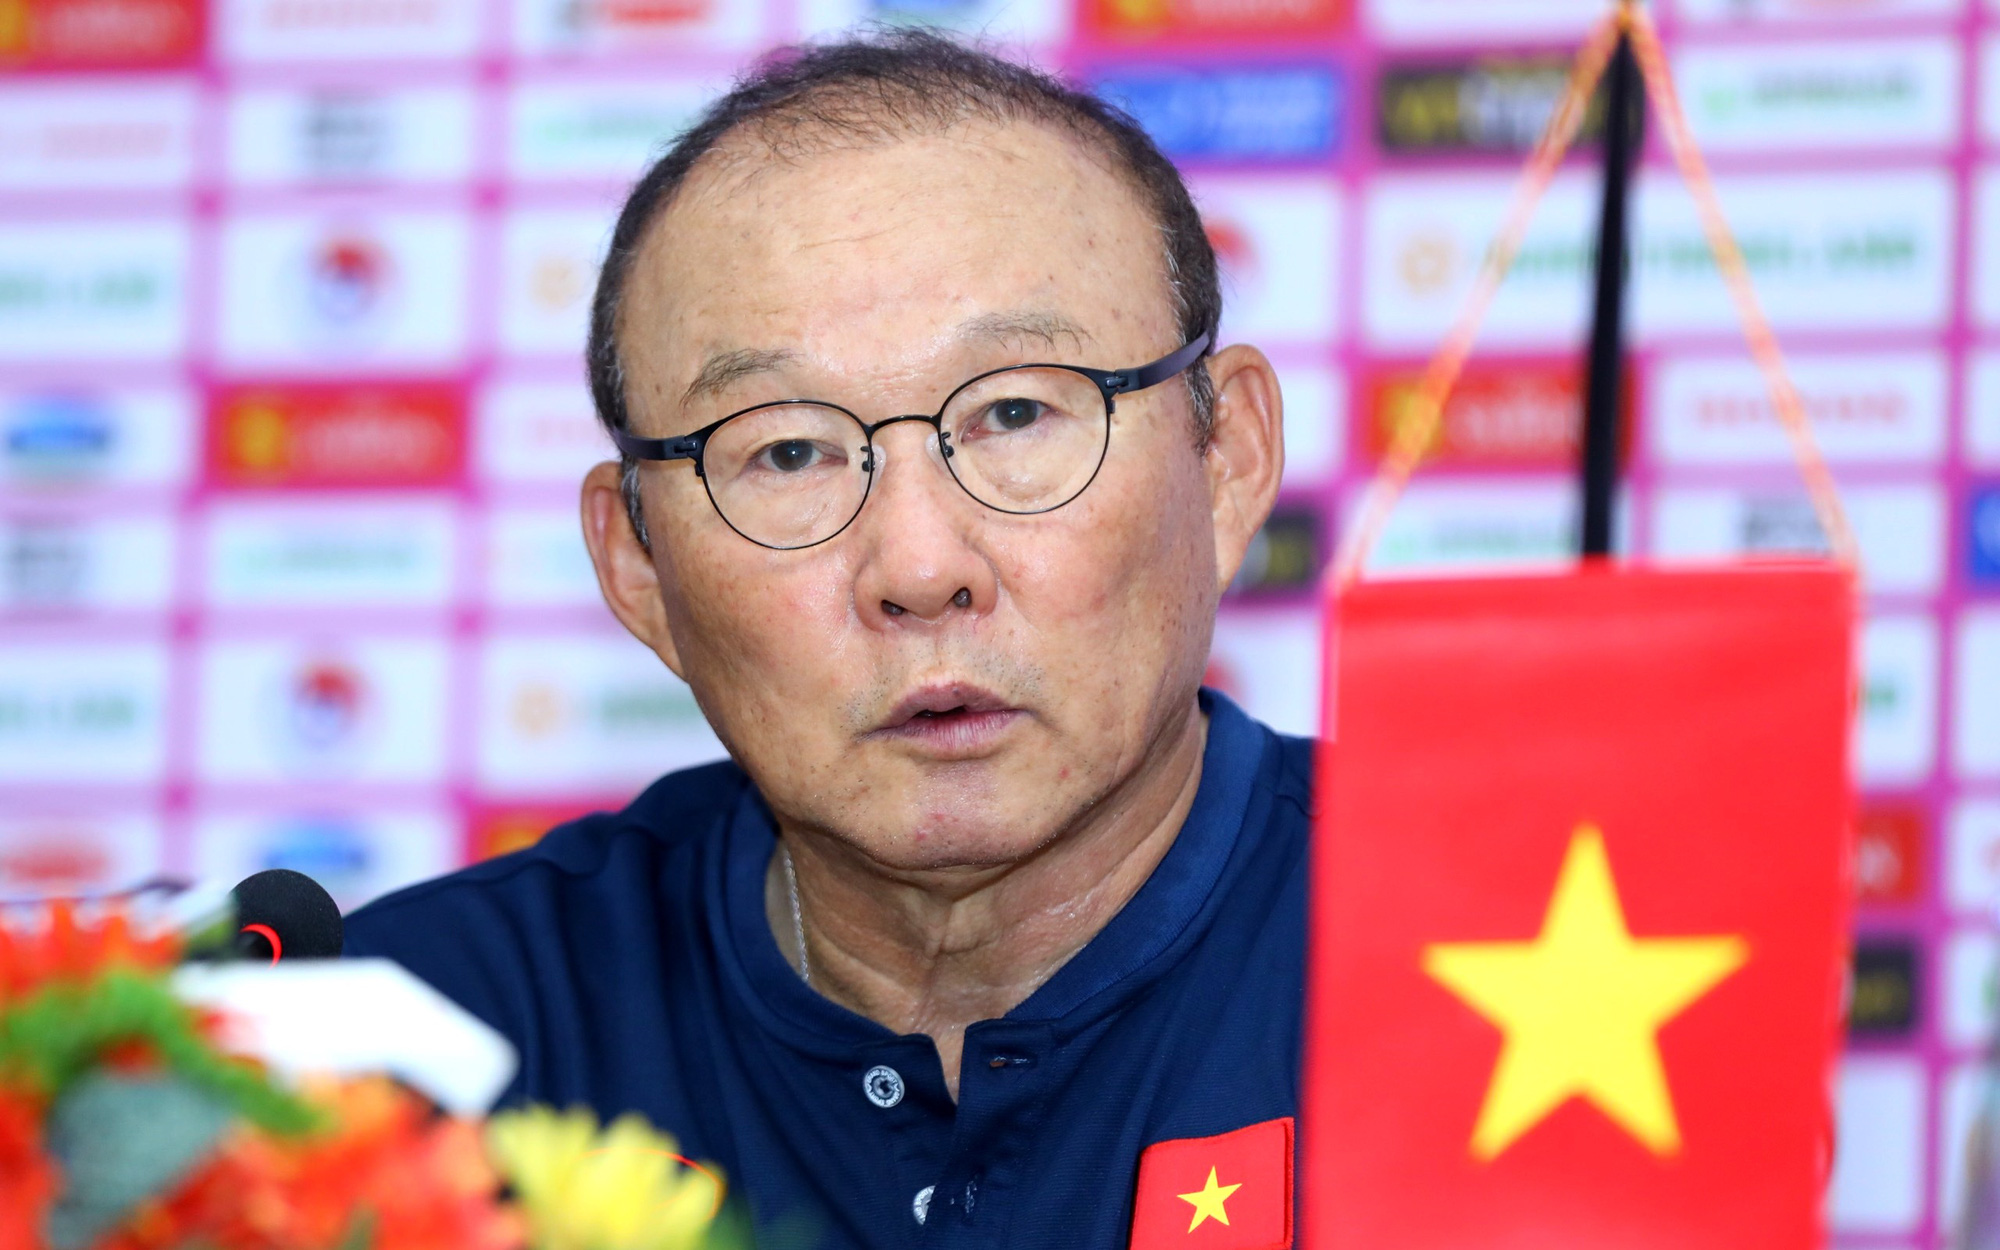 HLV Park Hang Seo: "Việt Nam luôn ở trong tim dù tôi không còn làm HLV trưởng đội tuyển"